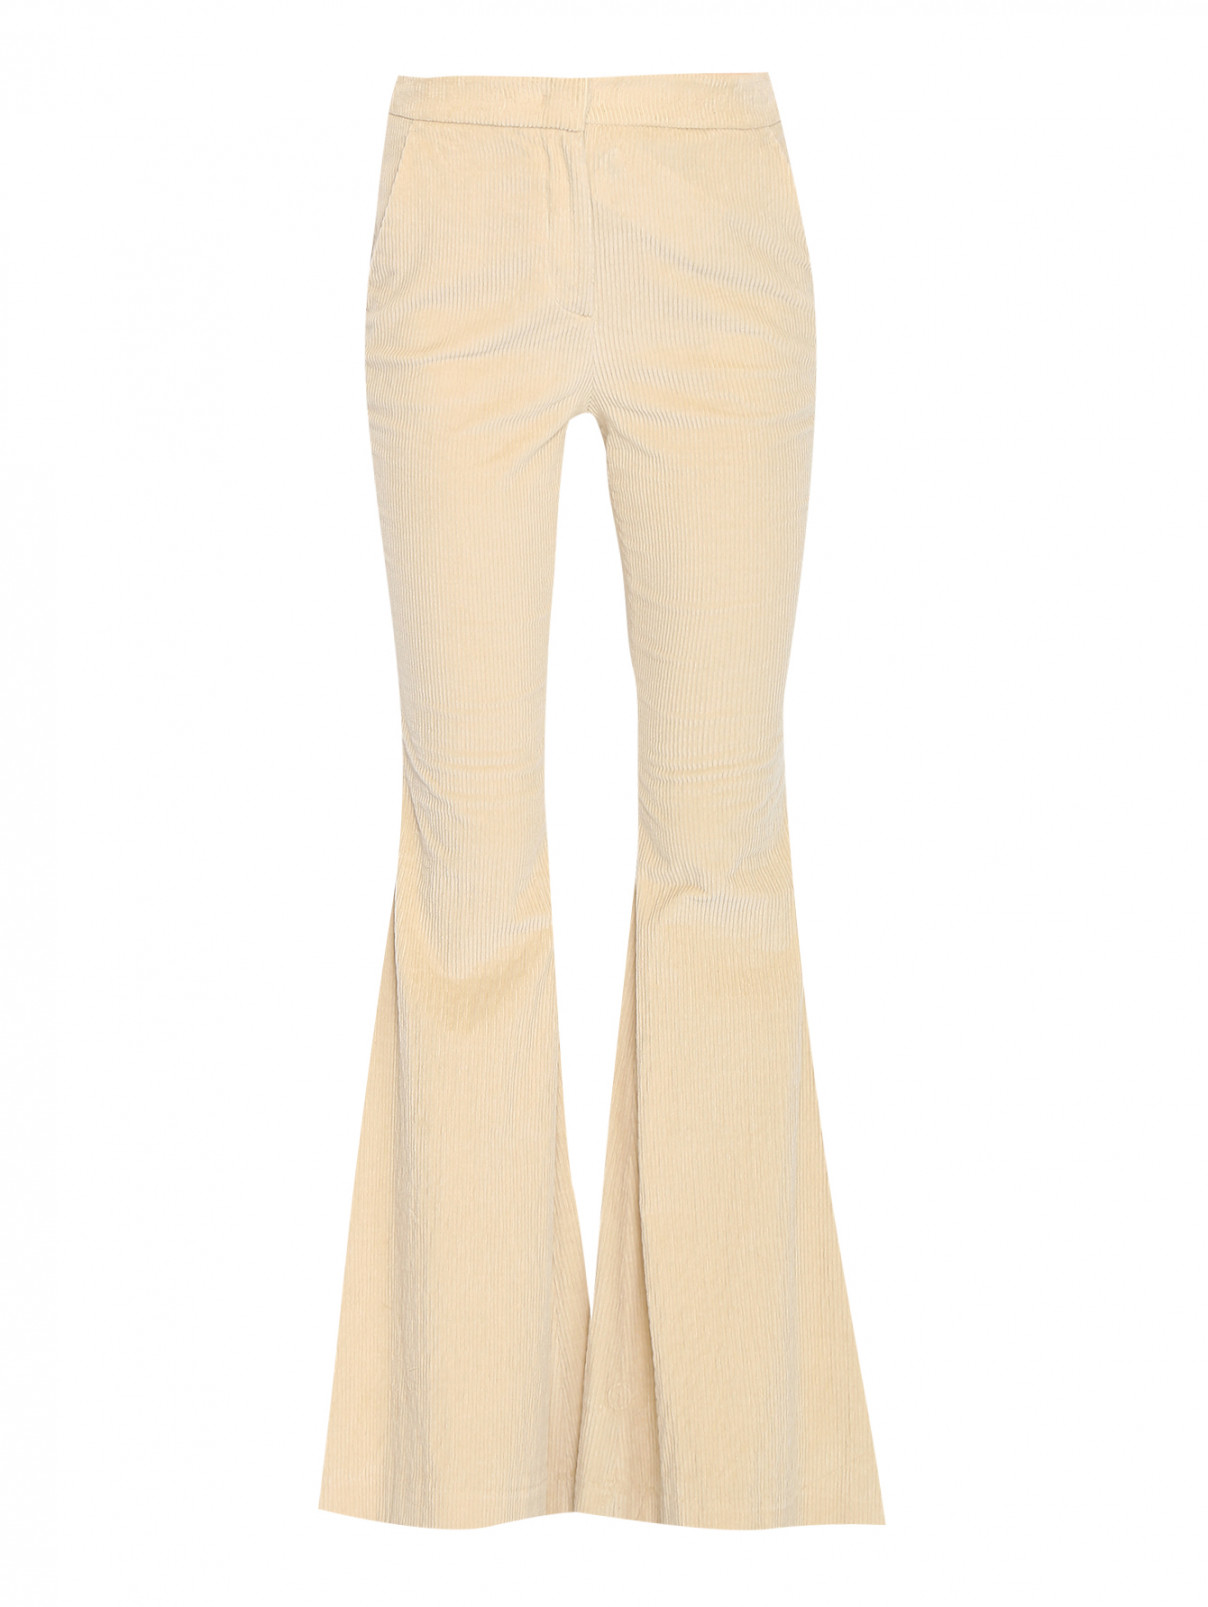 Расклешенные брюки из хлопка LARDINI  –  Общий вид  – Цвет:  Бежевый